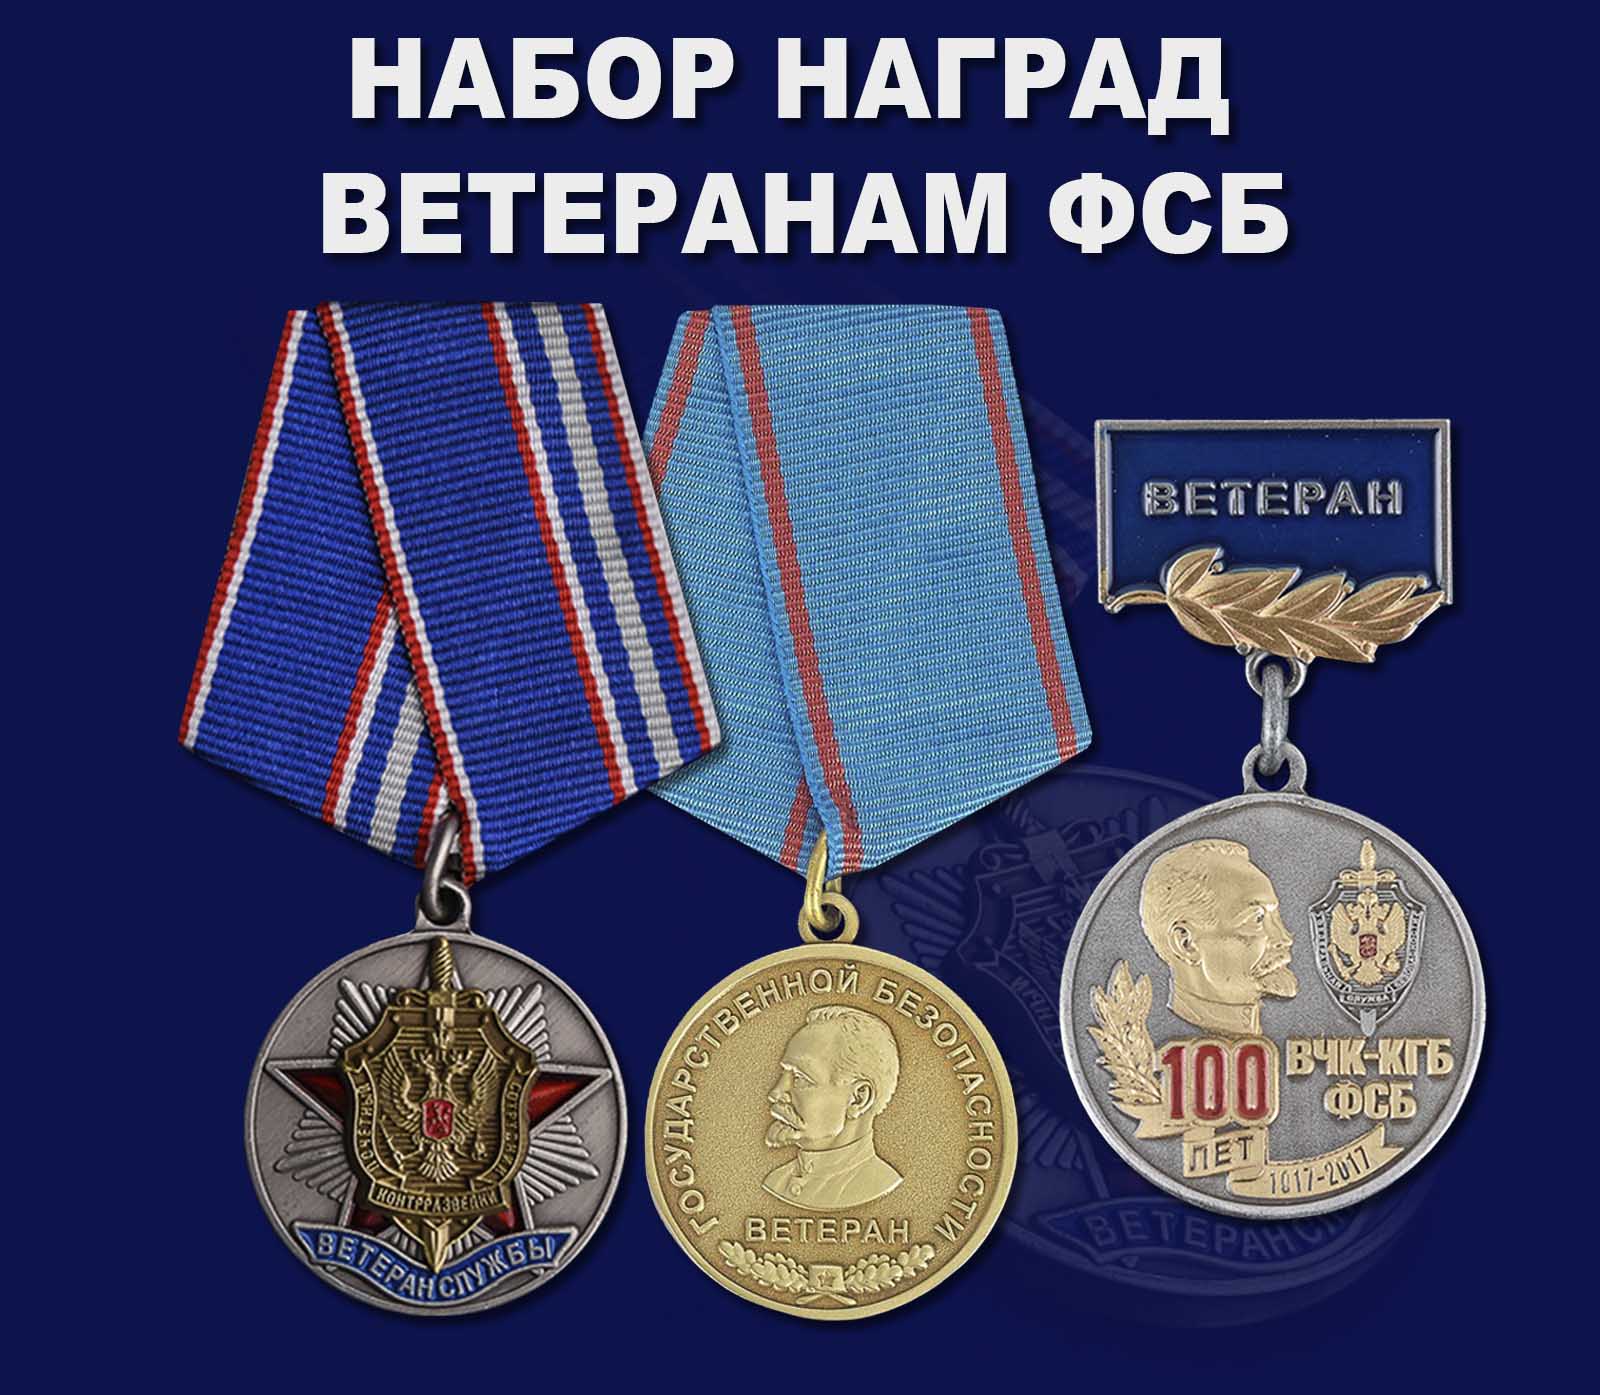 Купить набор наград Ветеранам ФСБ